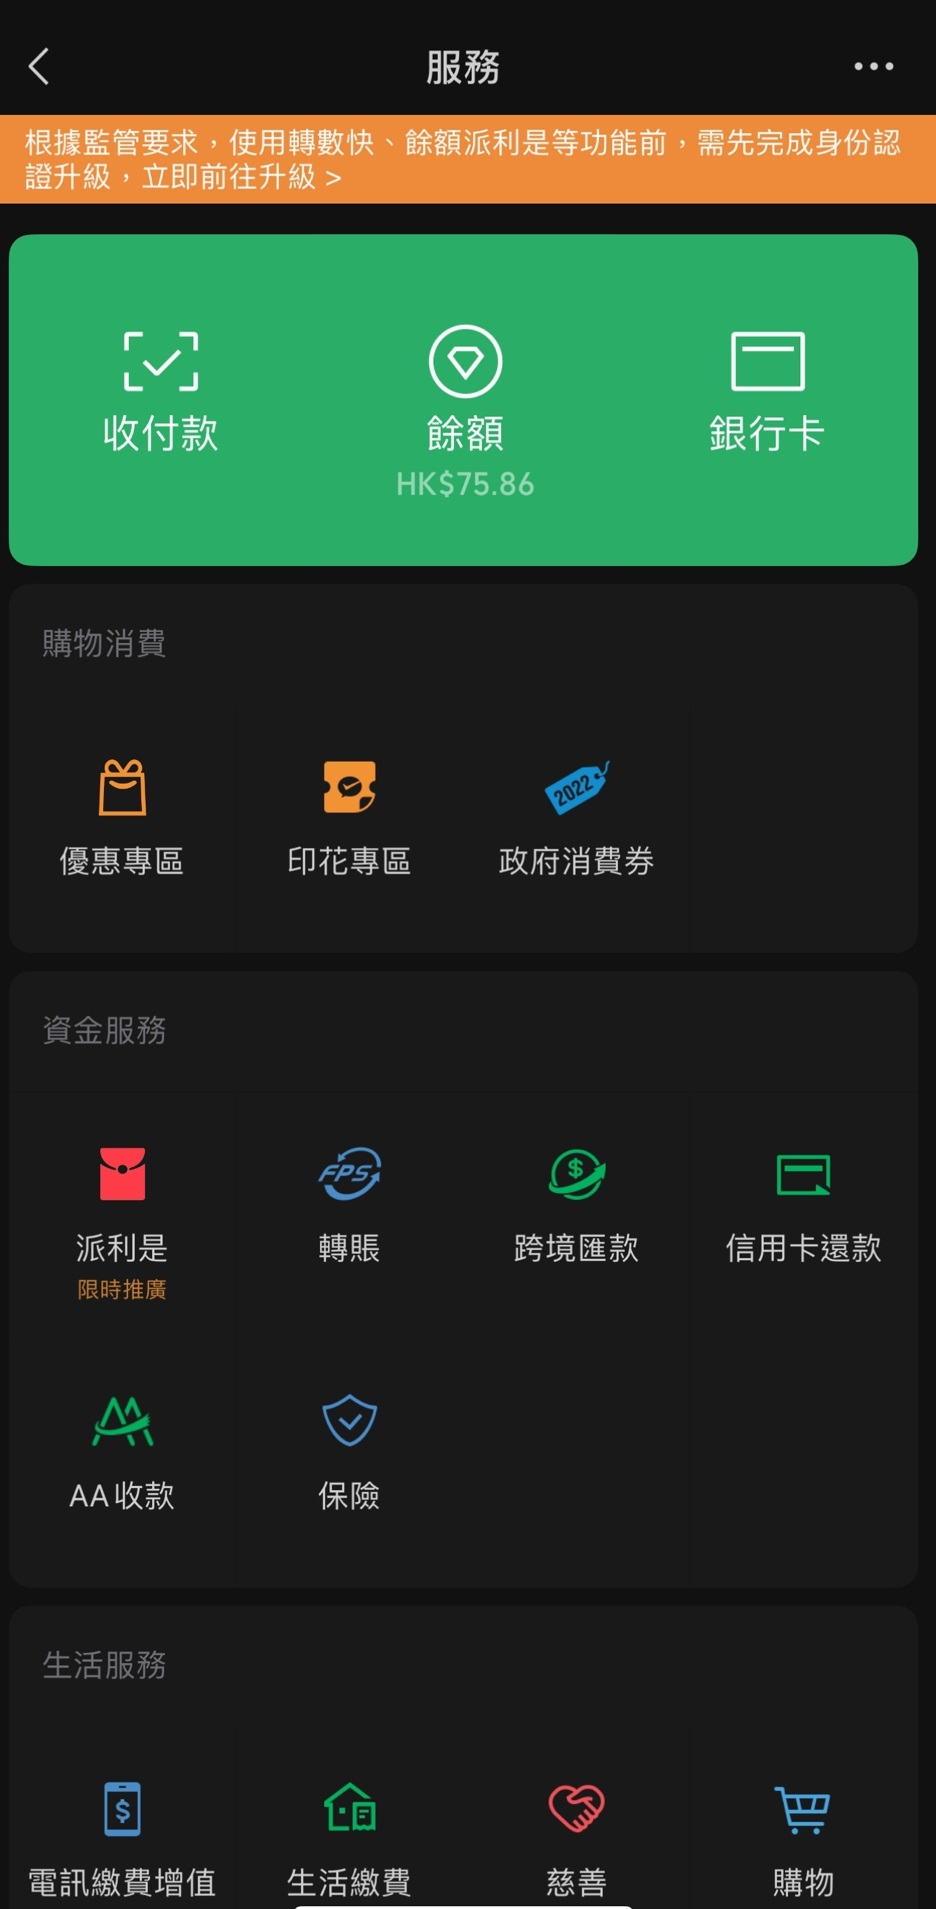 WeChat Pay HK 主页面